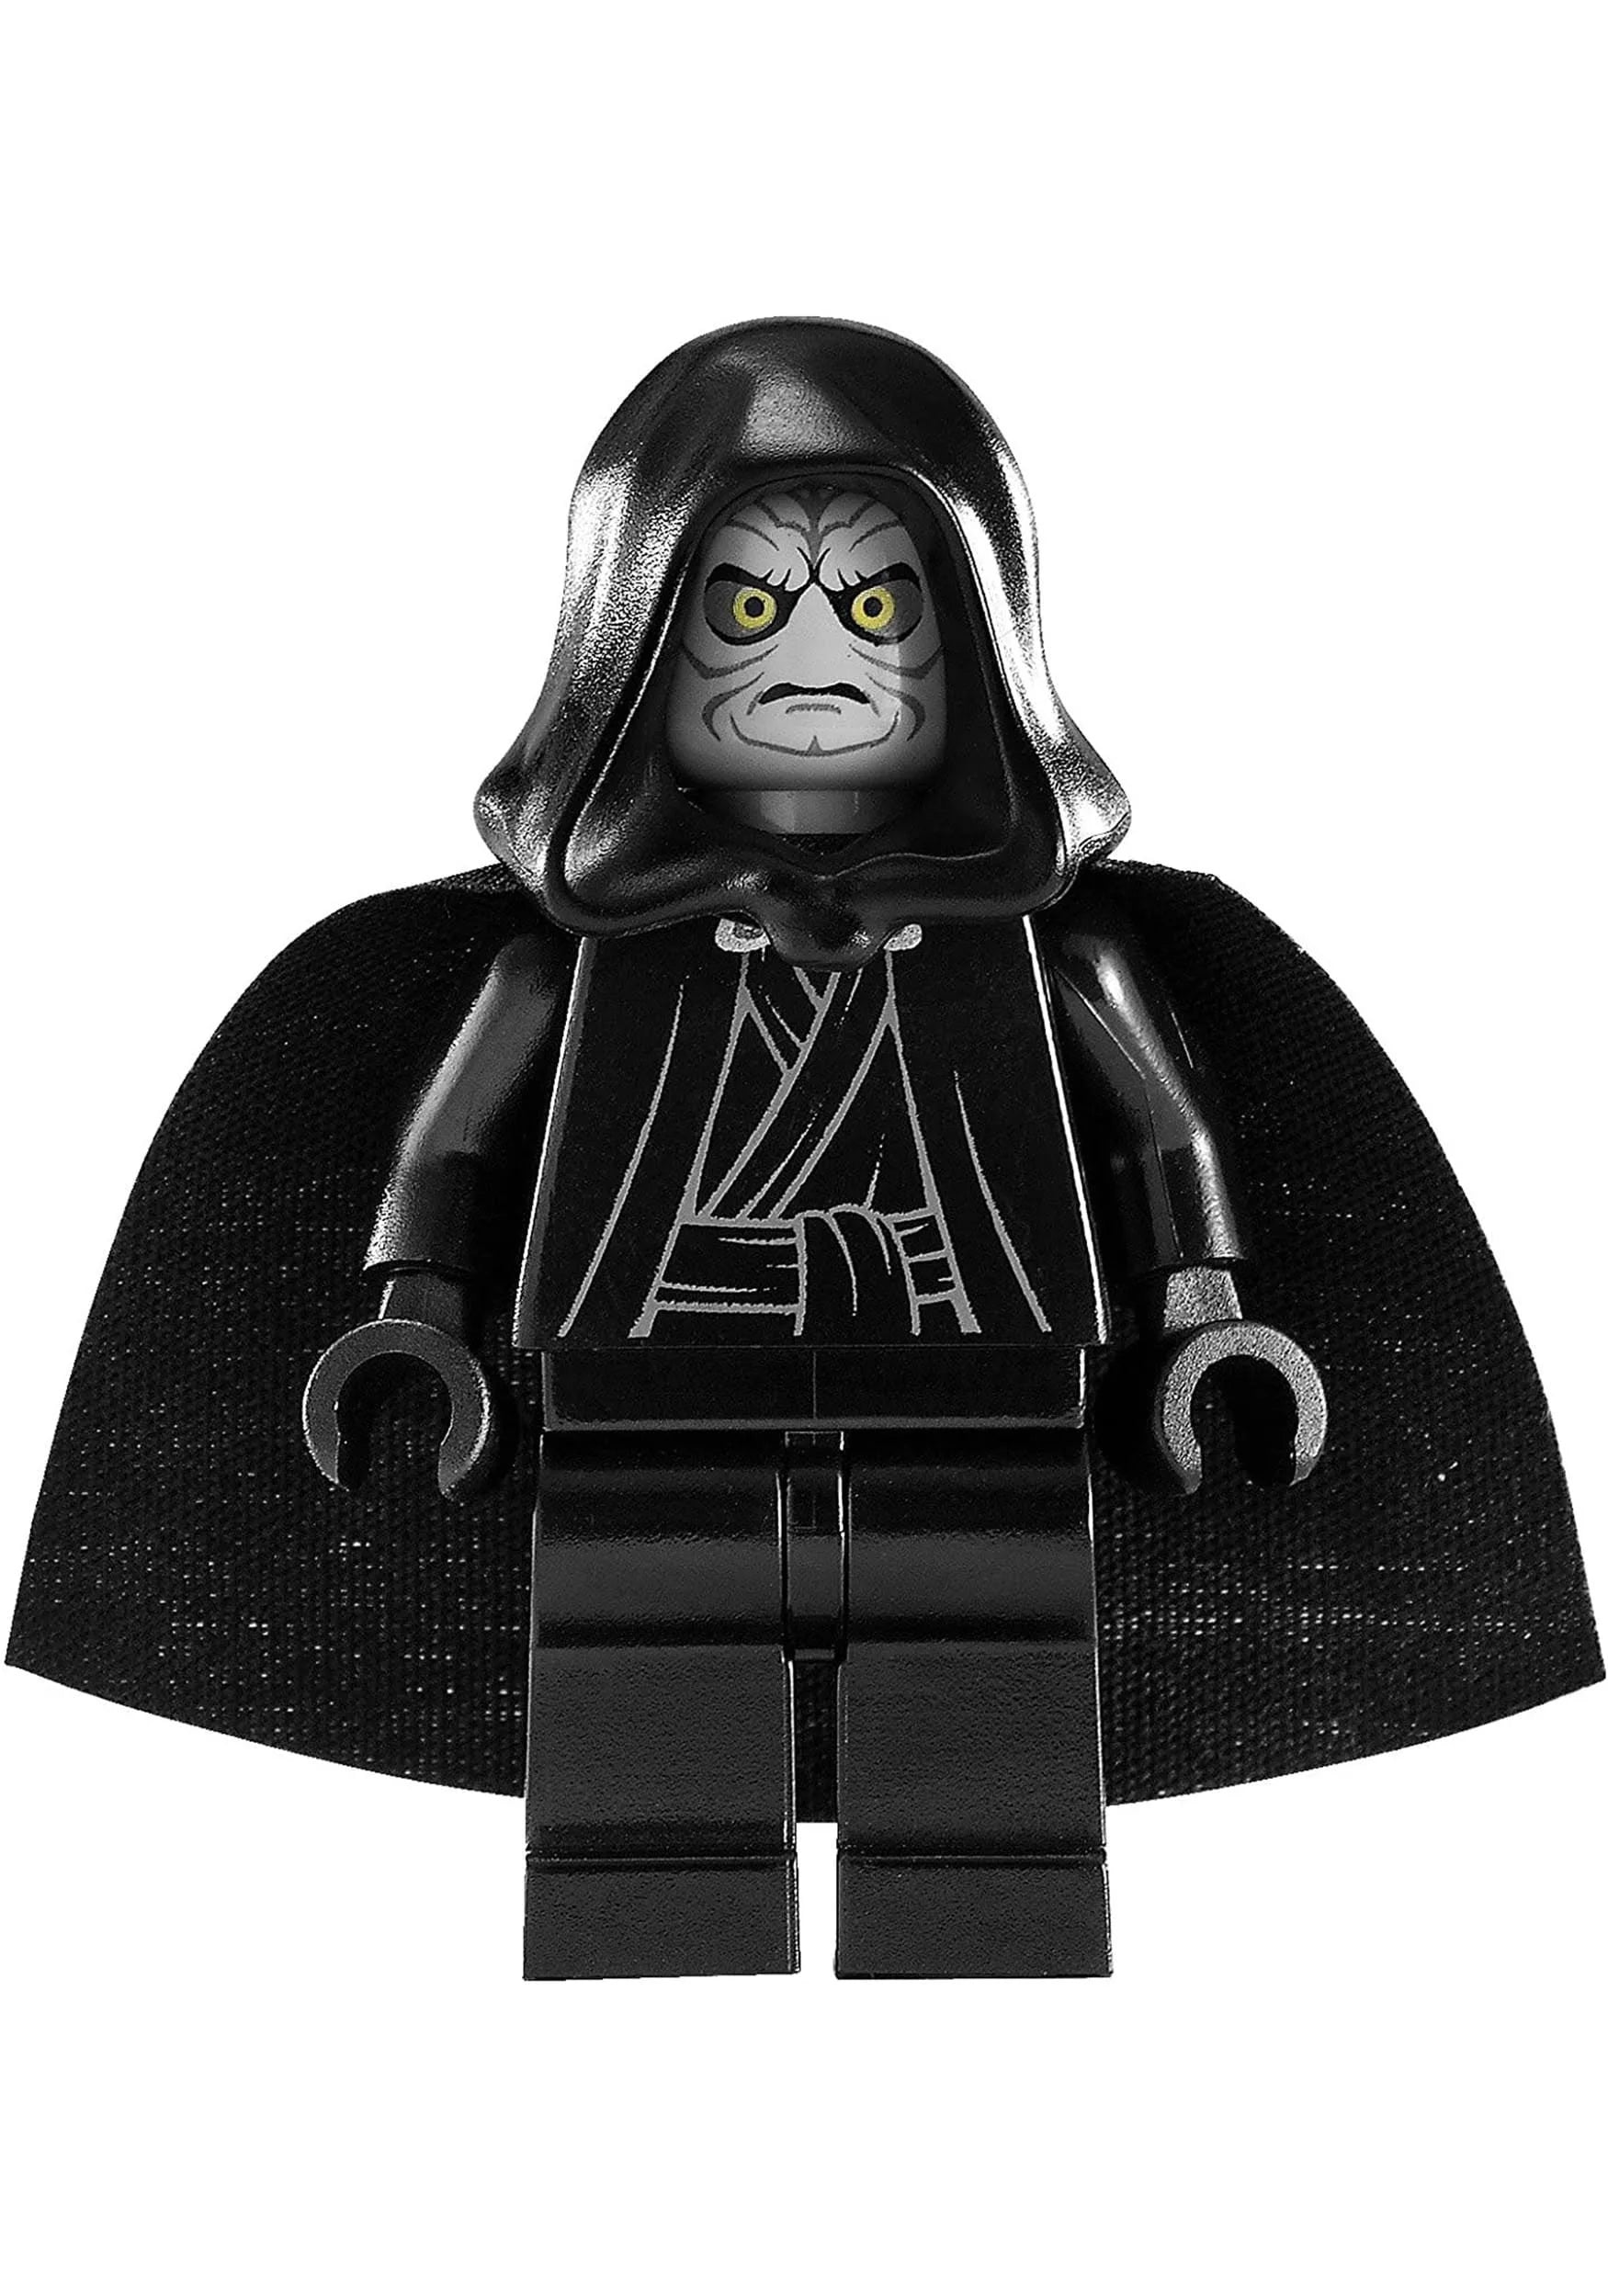 LEGO Star Wars Death Star 10188 (RETIRED)